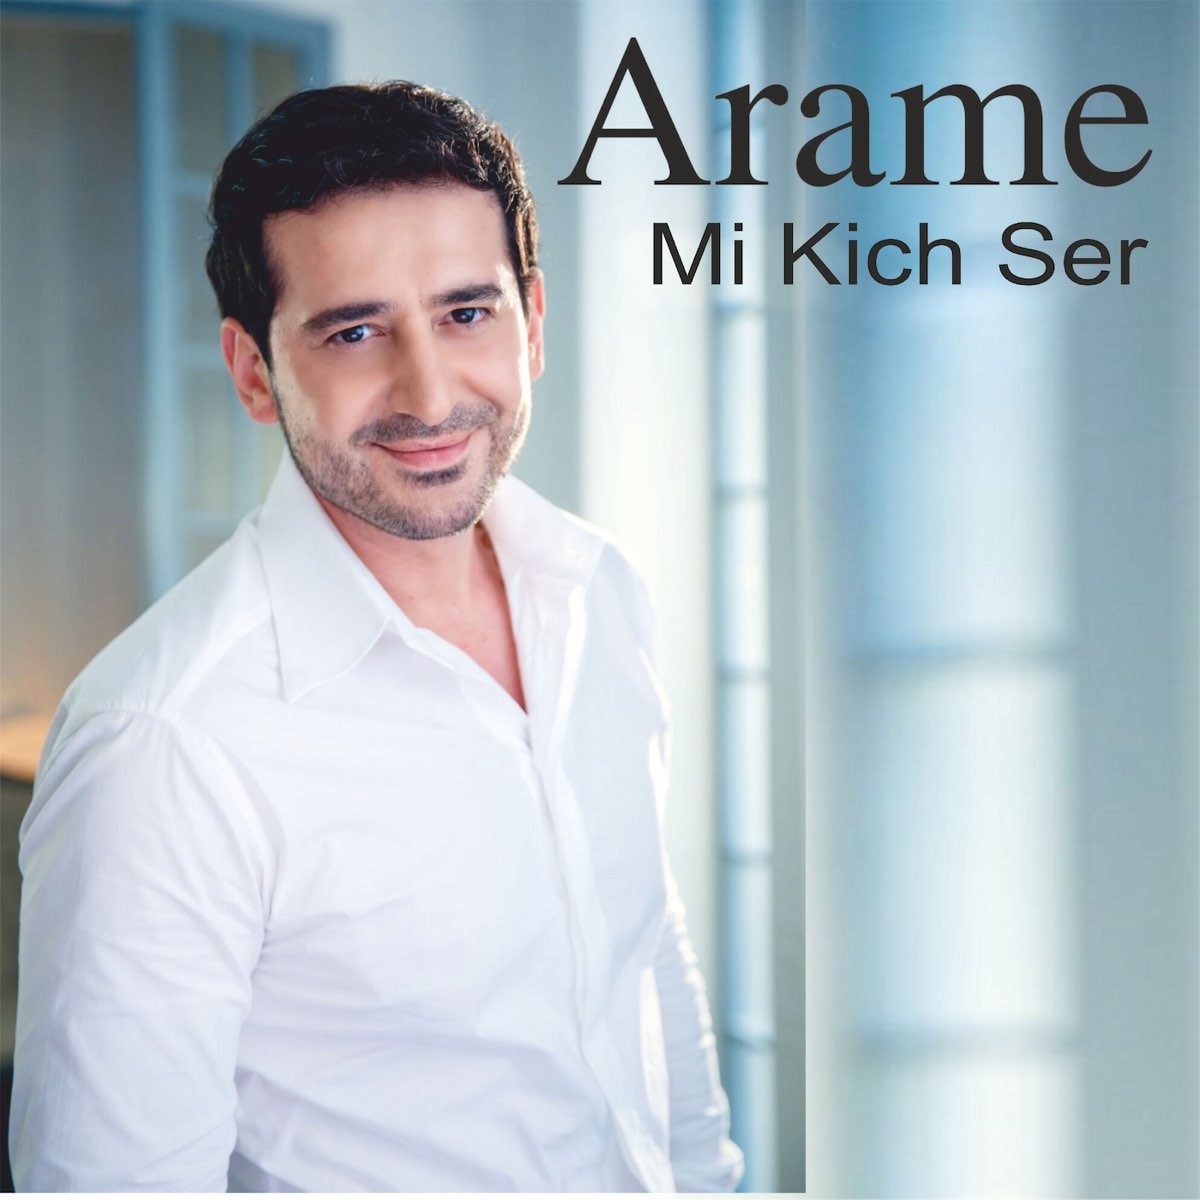 Армянские песни араме. Арамэ. Arame певец. Певец араме фото.